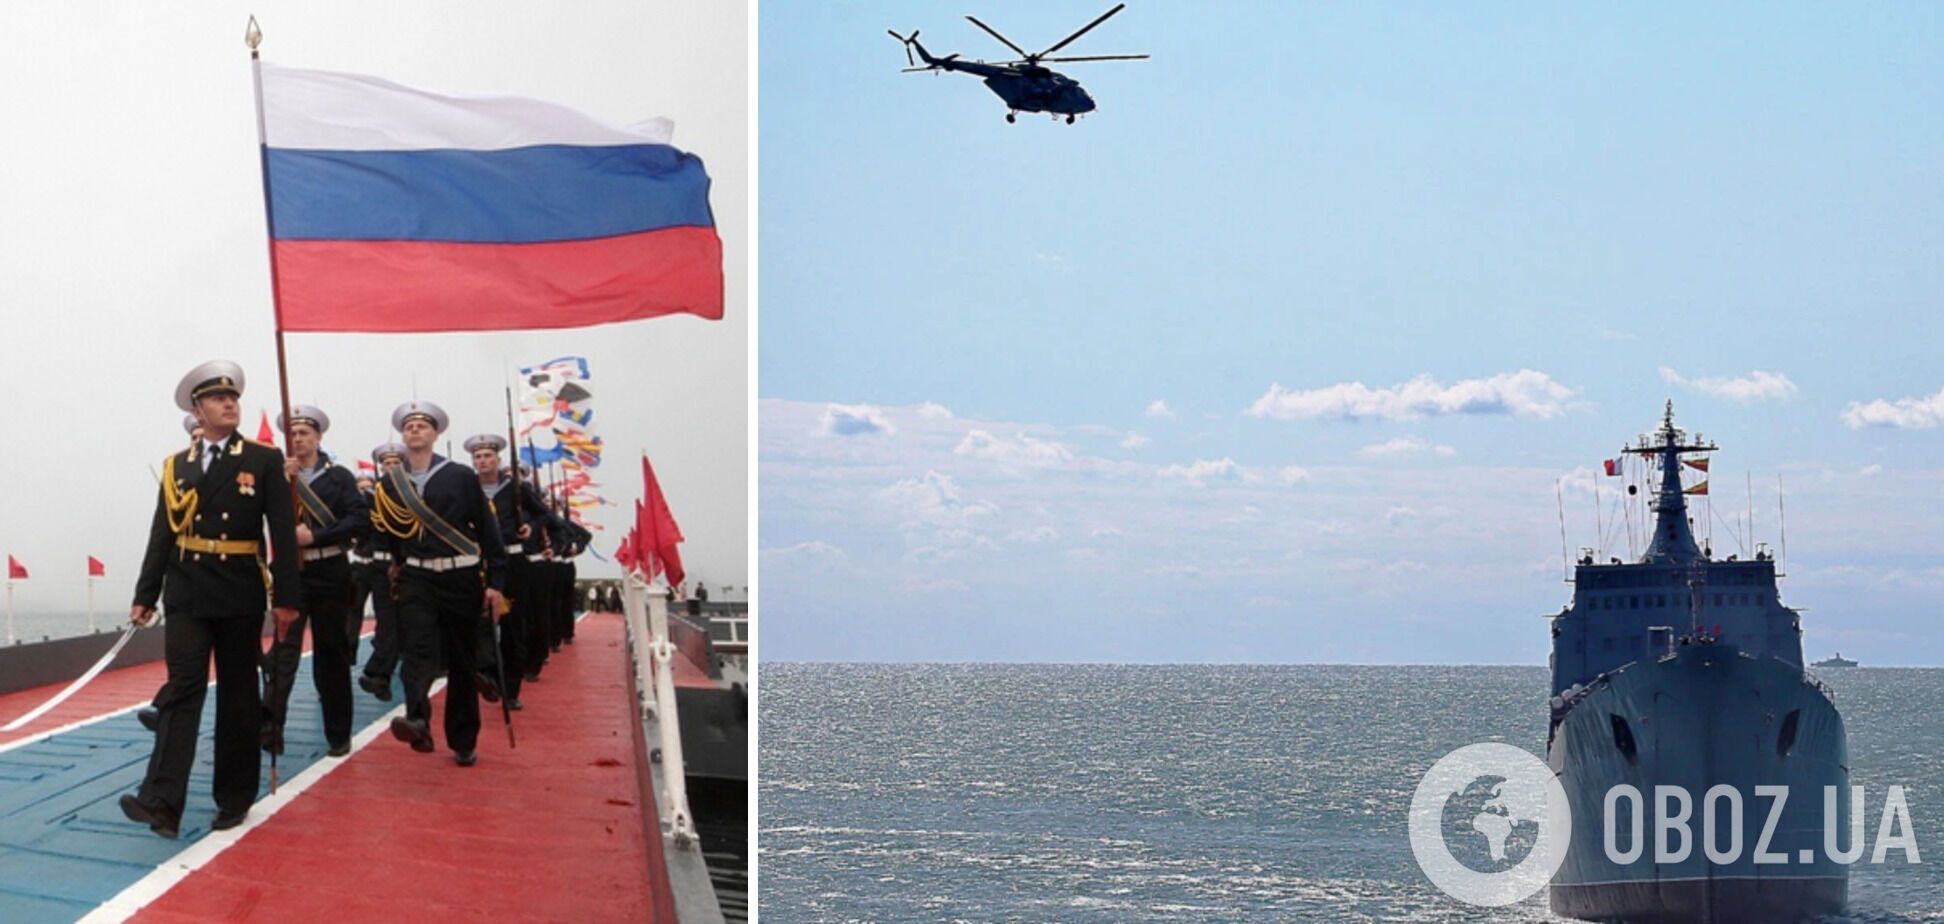 Российский корабель "Орск" участвовал в оккупации Крыма